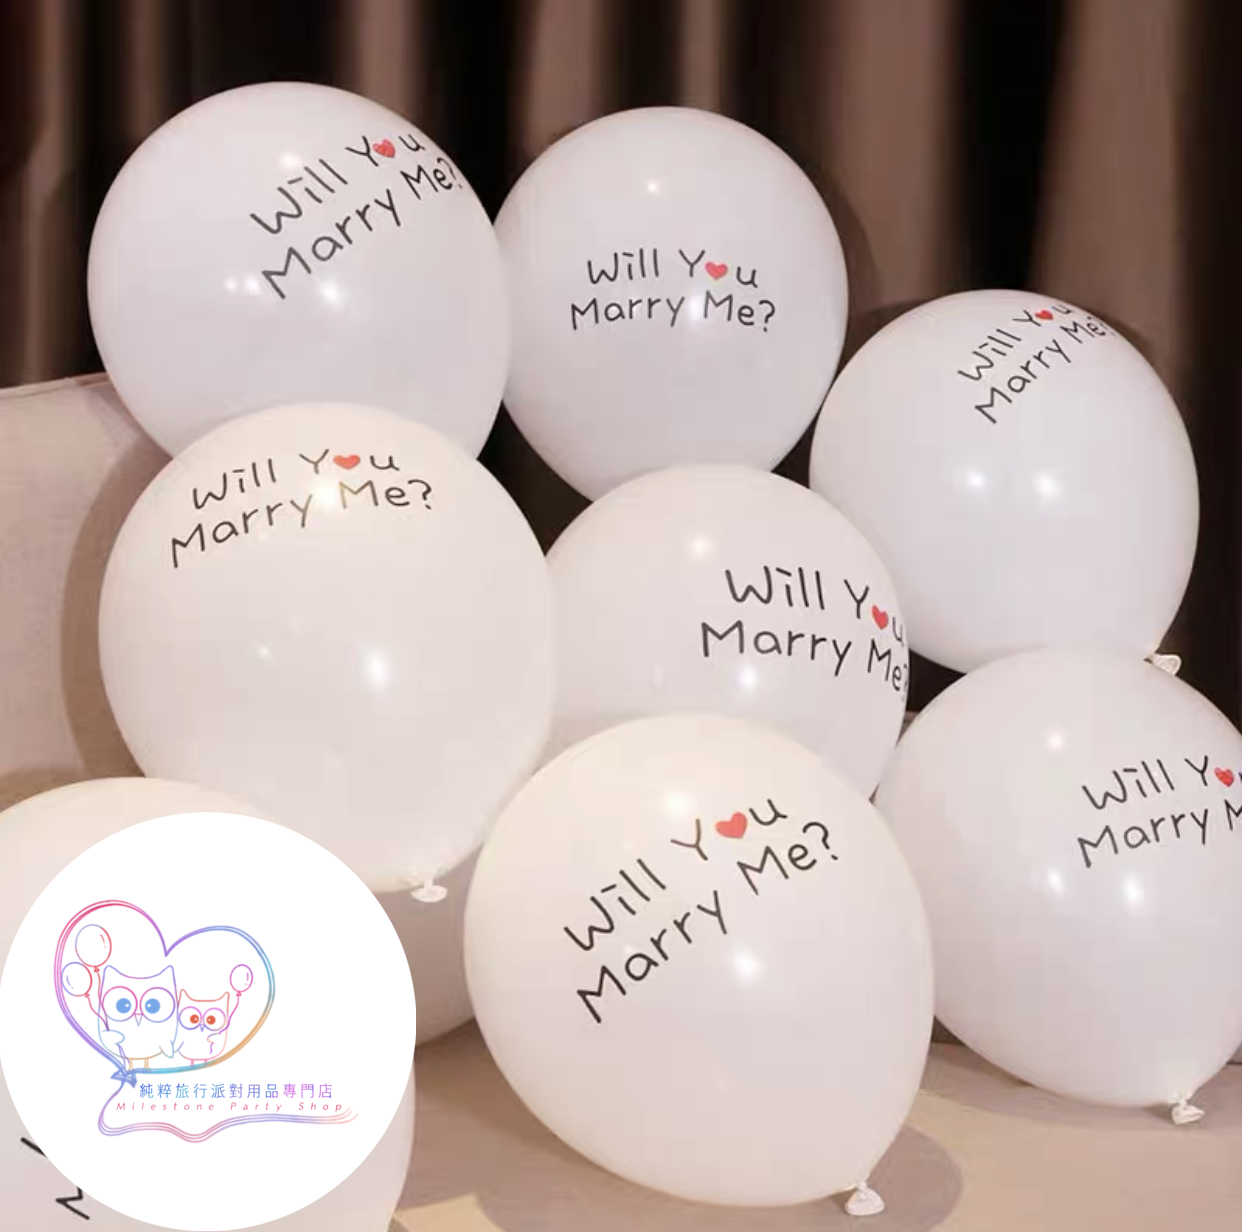 12吋乳膠氣球 (Will You Marry Me) (白色) (1pc) LBL1-1